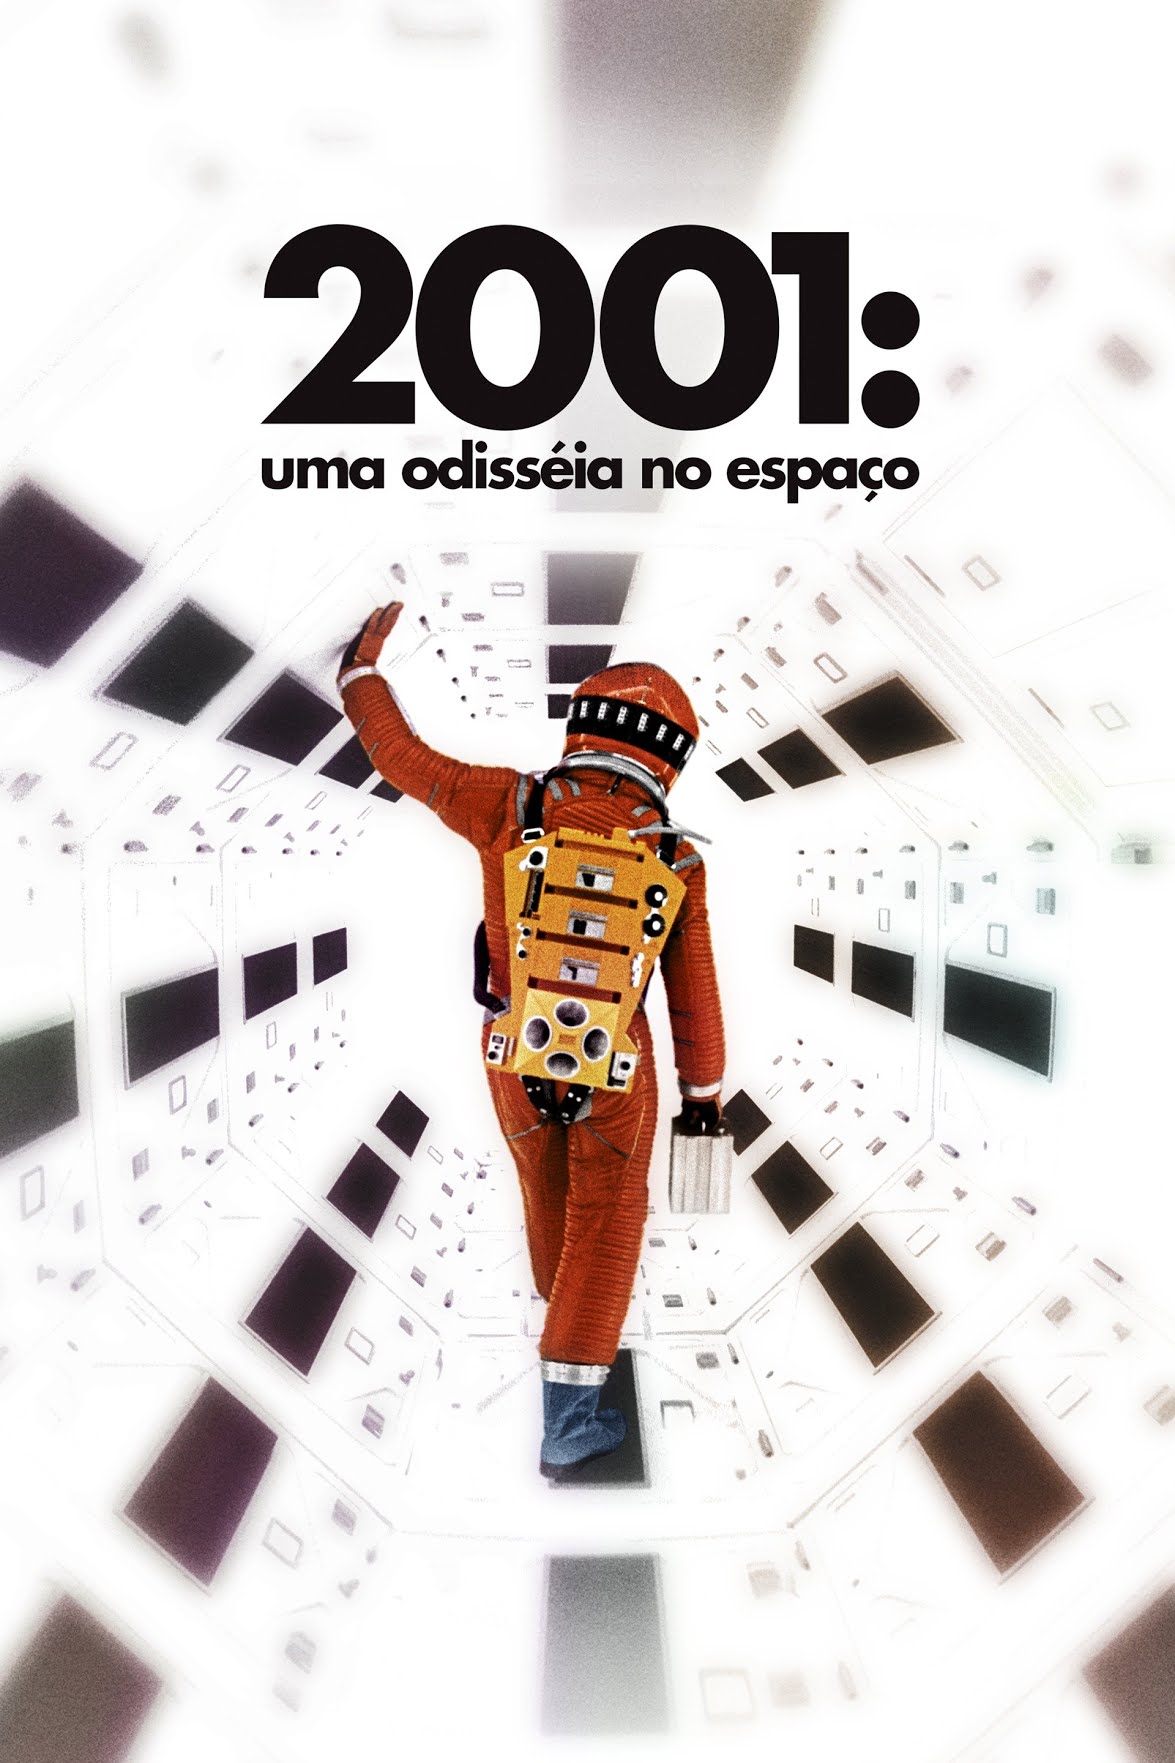 Filme "2001: Uma odisséia no espaço"